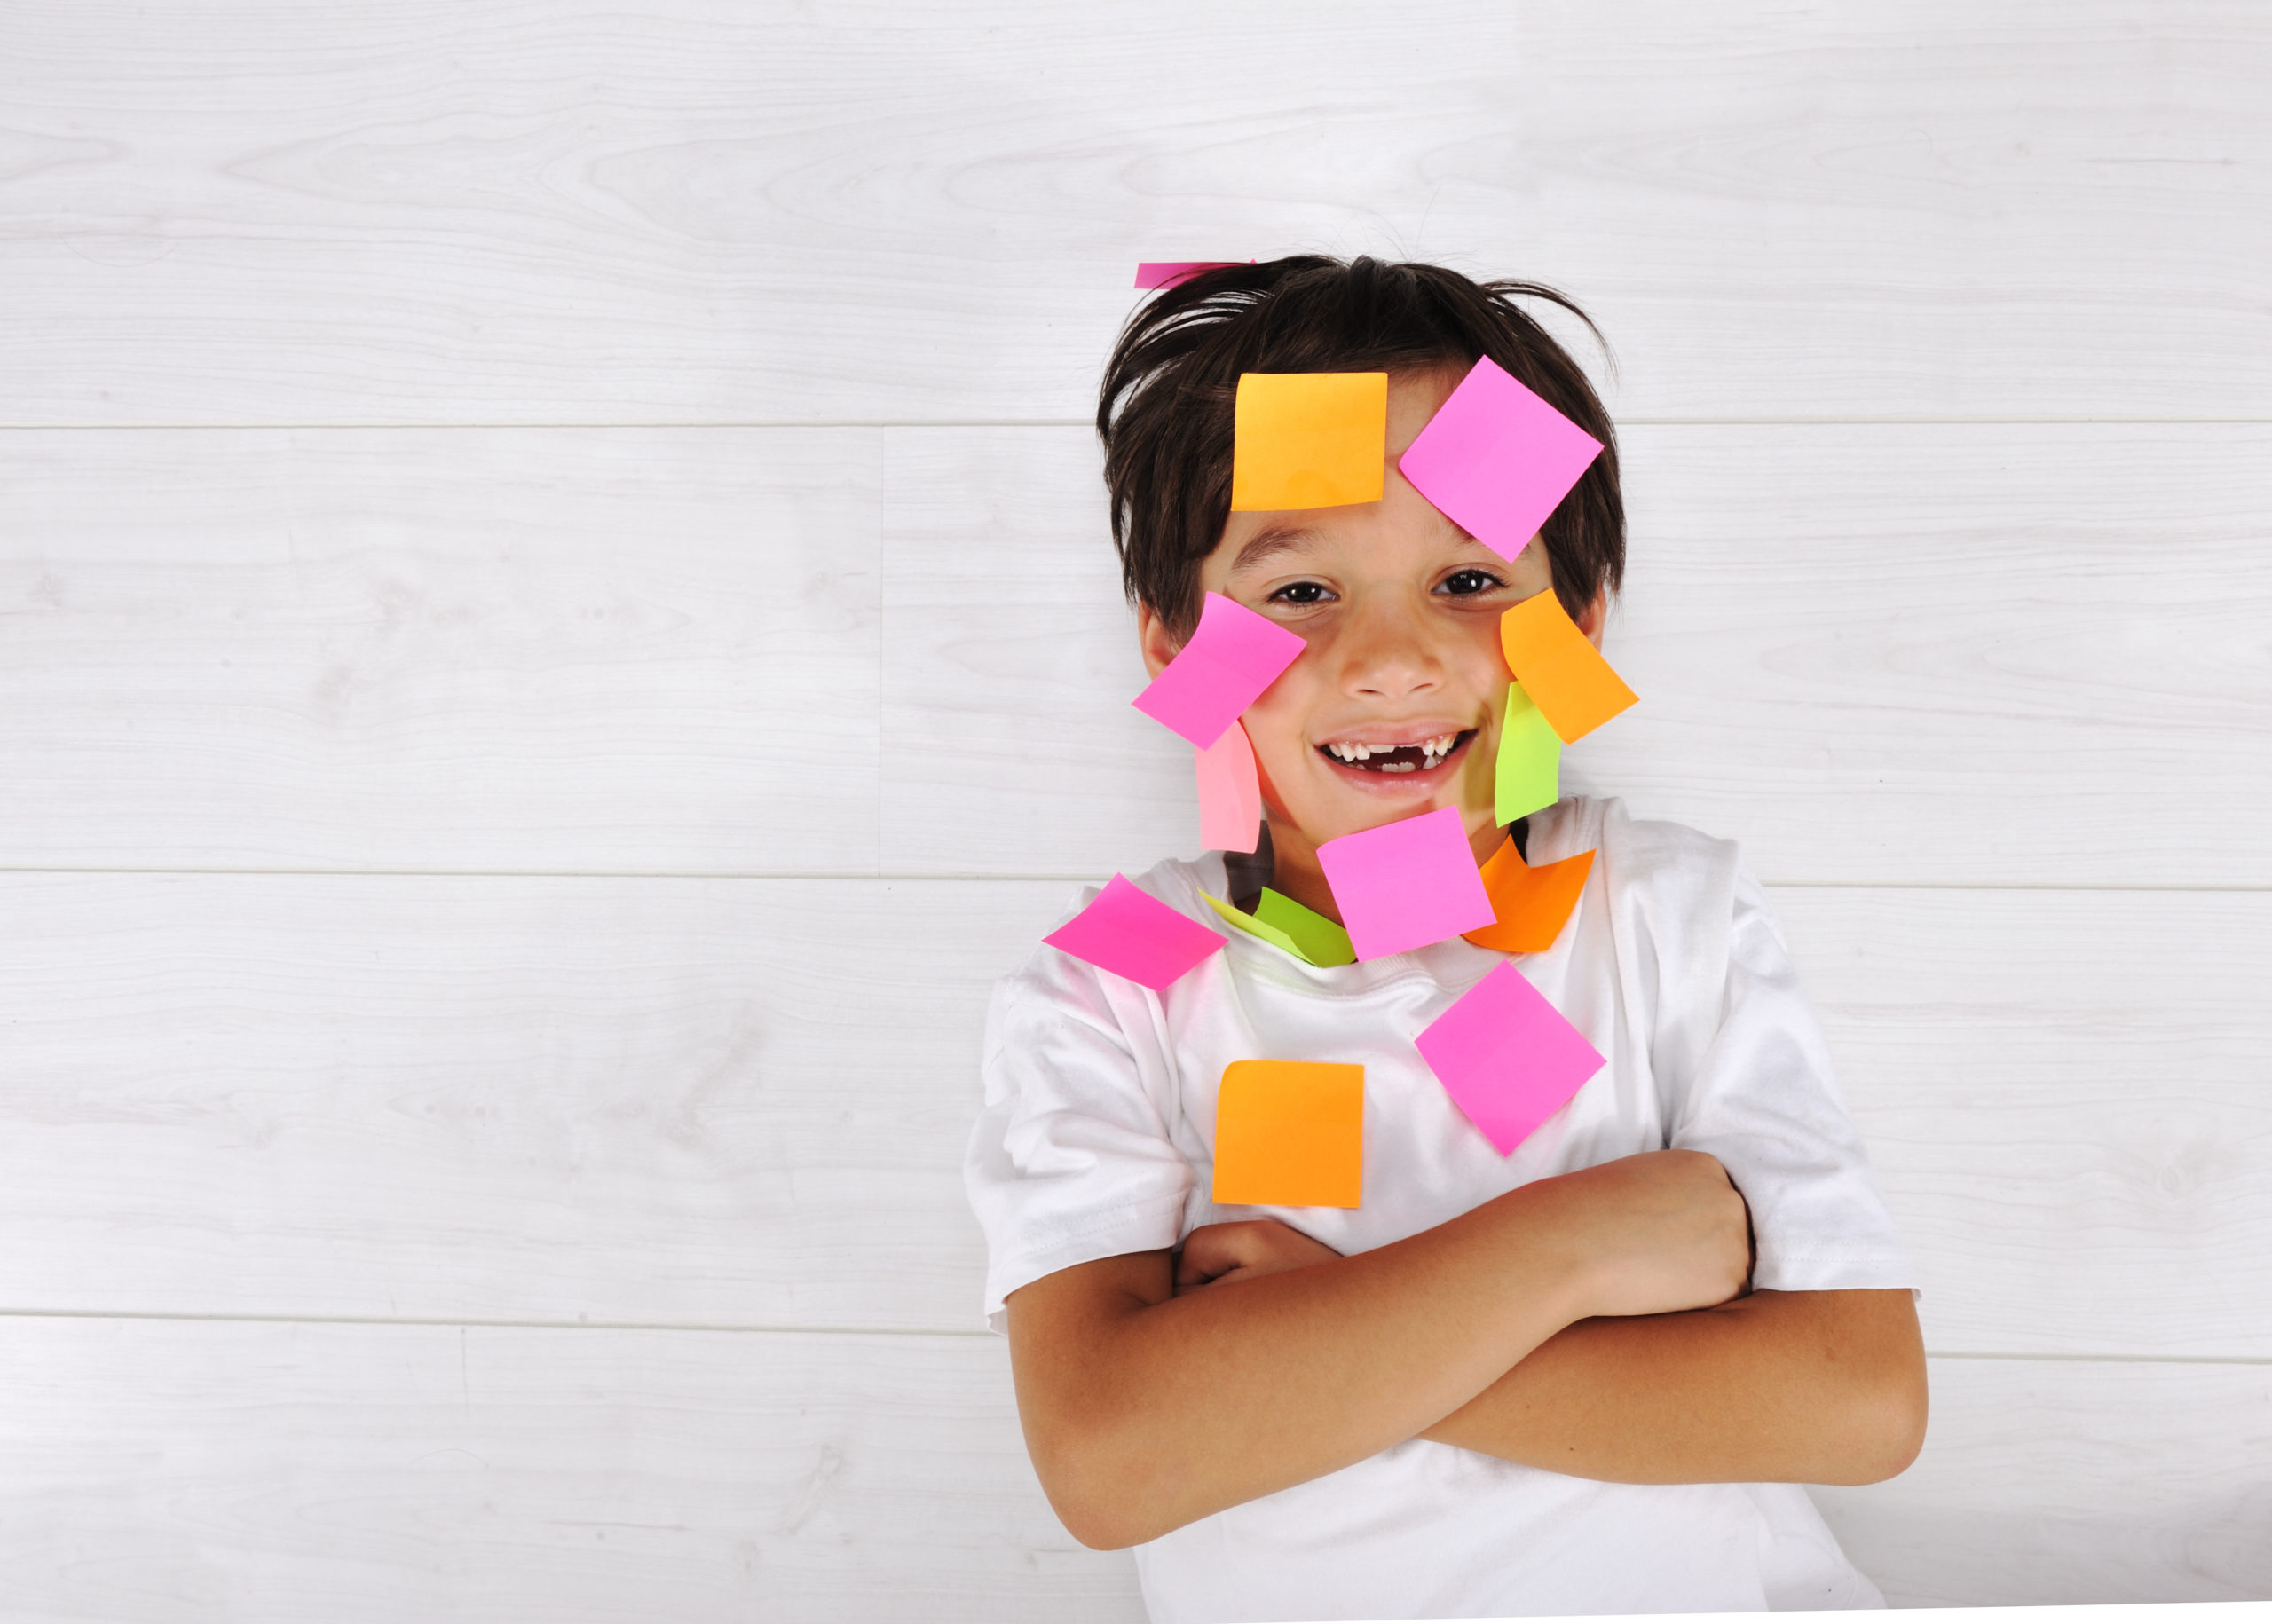 We delen 7 waardevolle rekentips zodat jouw kind met plezier leert. Simpele tips die makkelijk toepasbaar zijn voor de rekenvaardigheid.